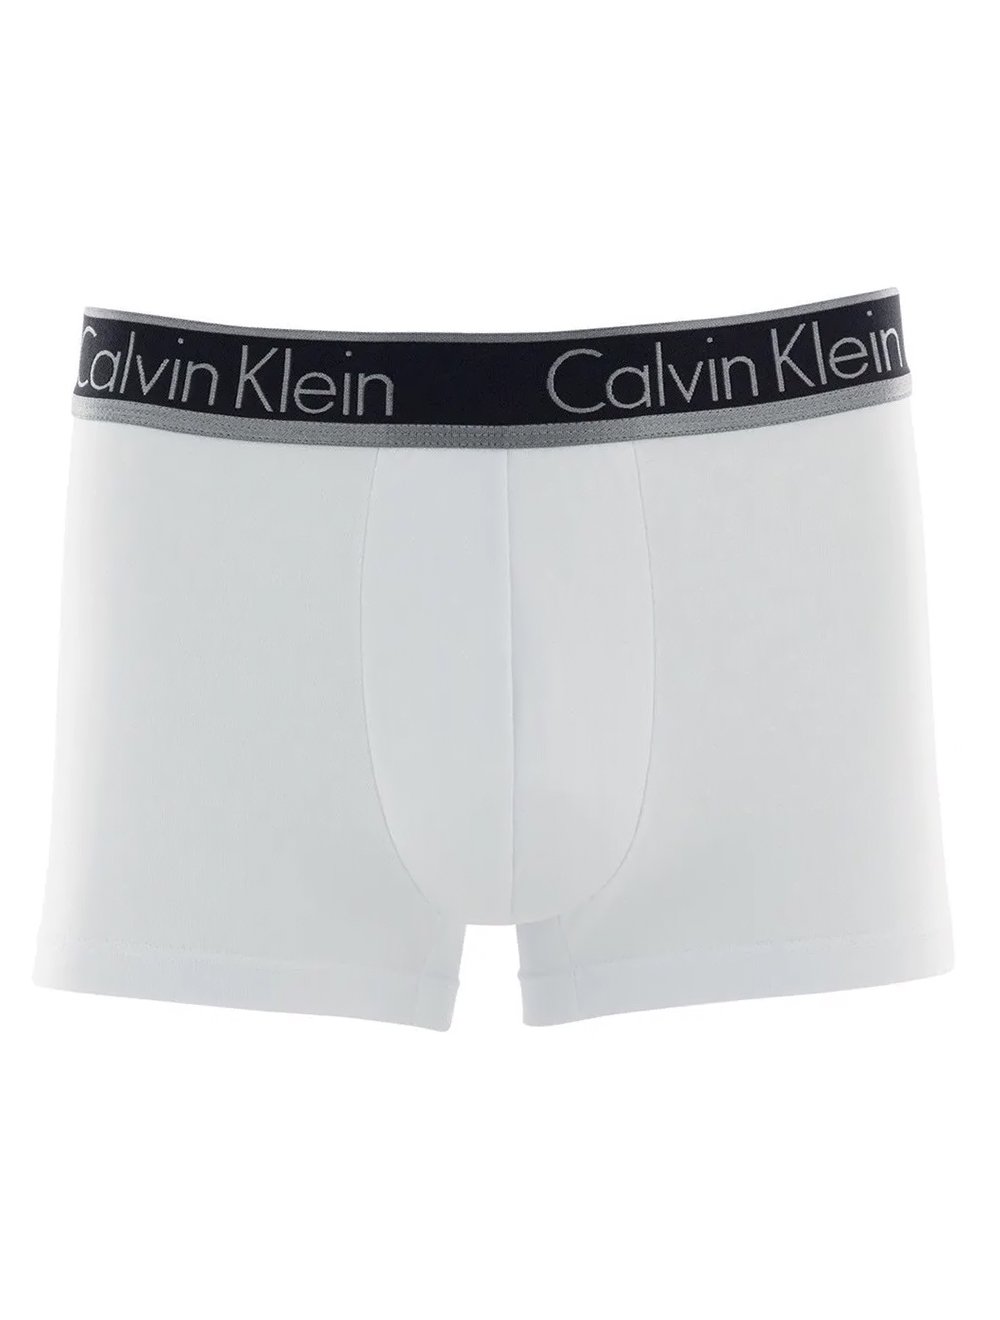 Cueca Calvin Klein Trunk Modal Prata Branca C10.03 BR02 1UN